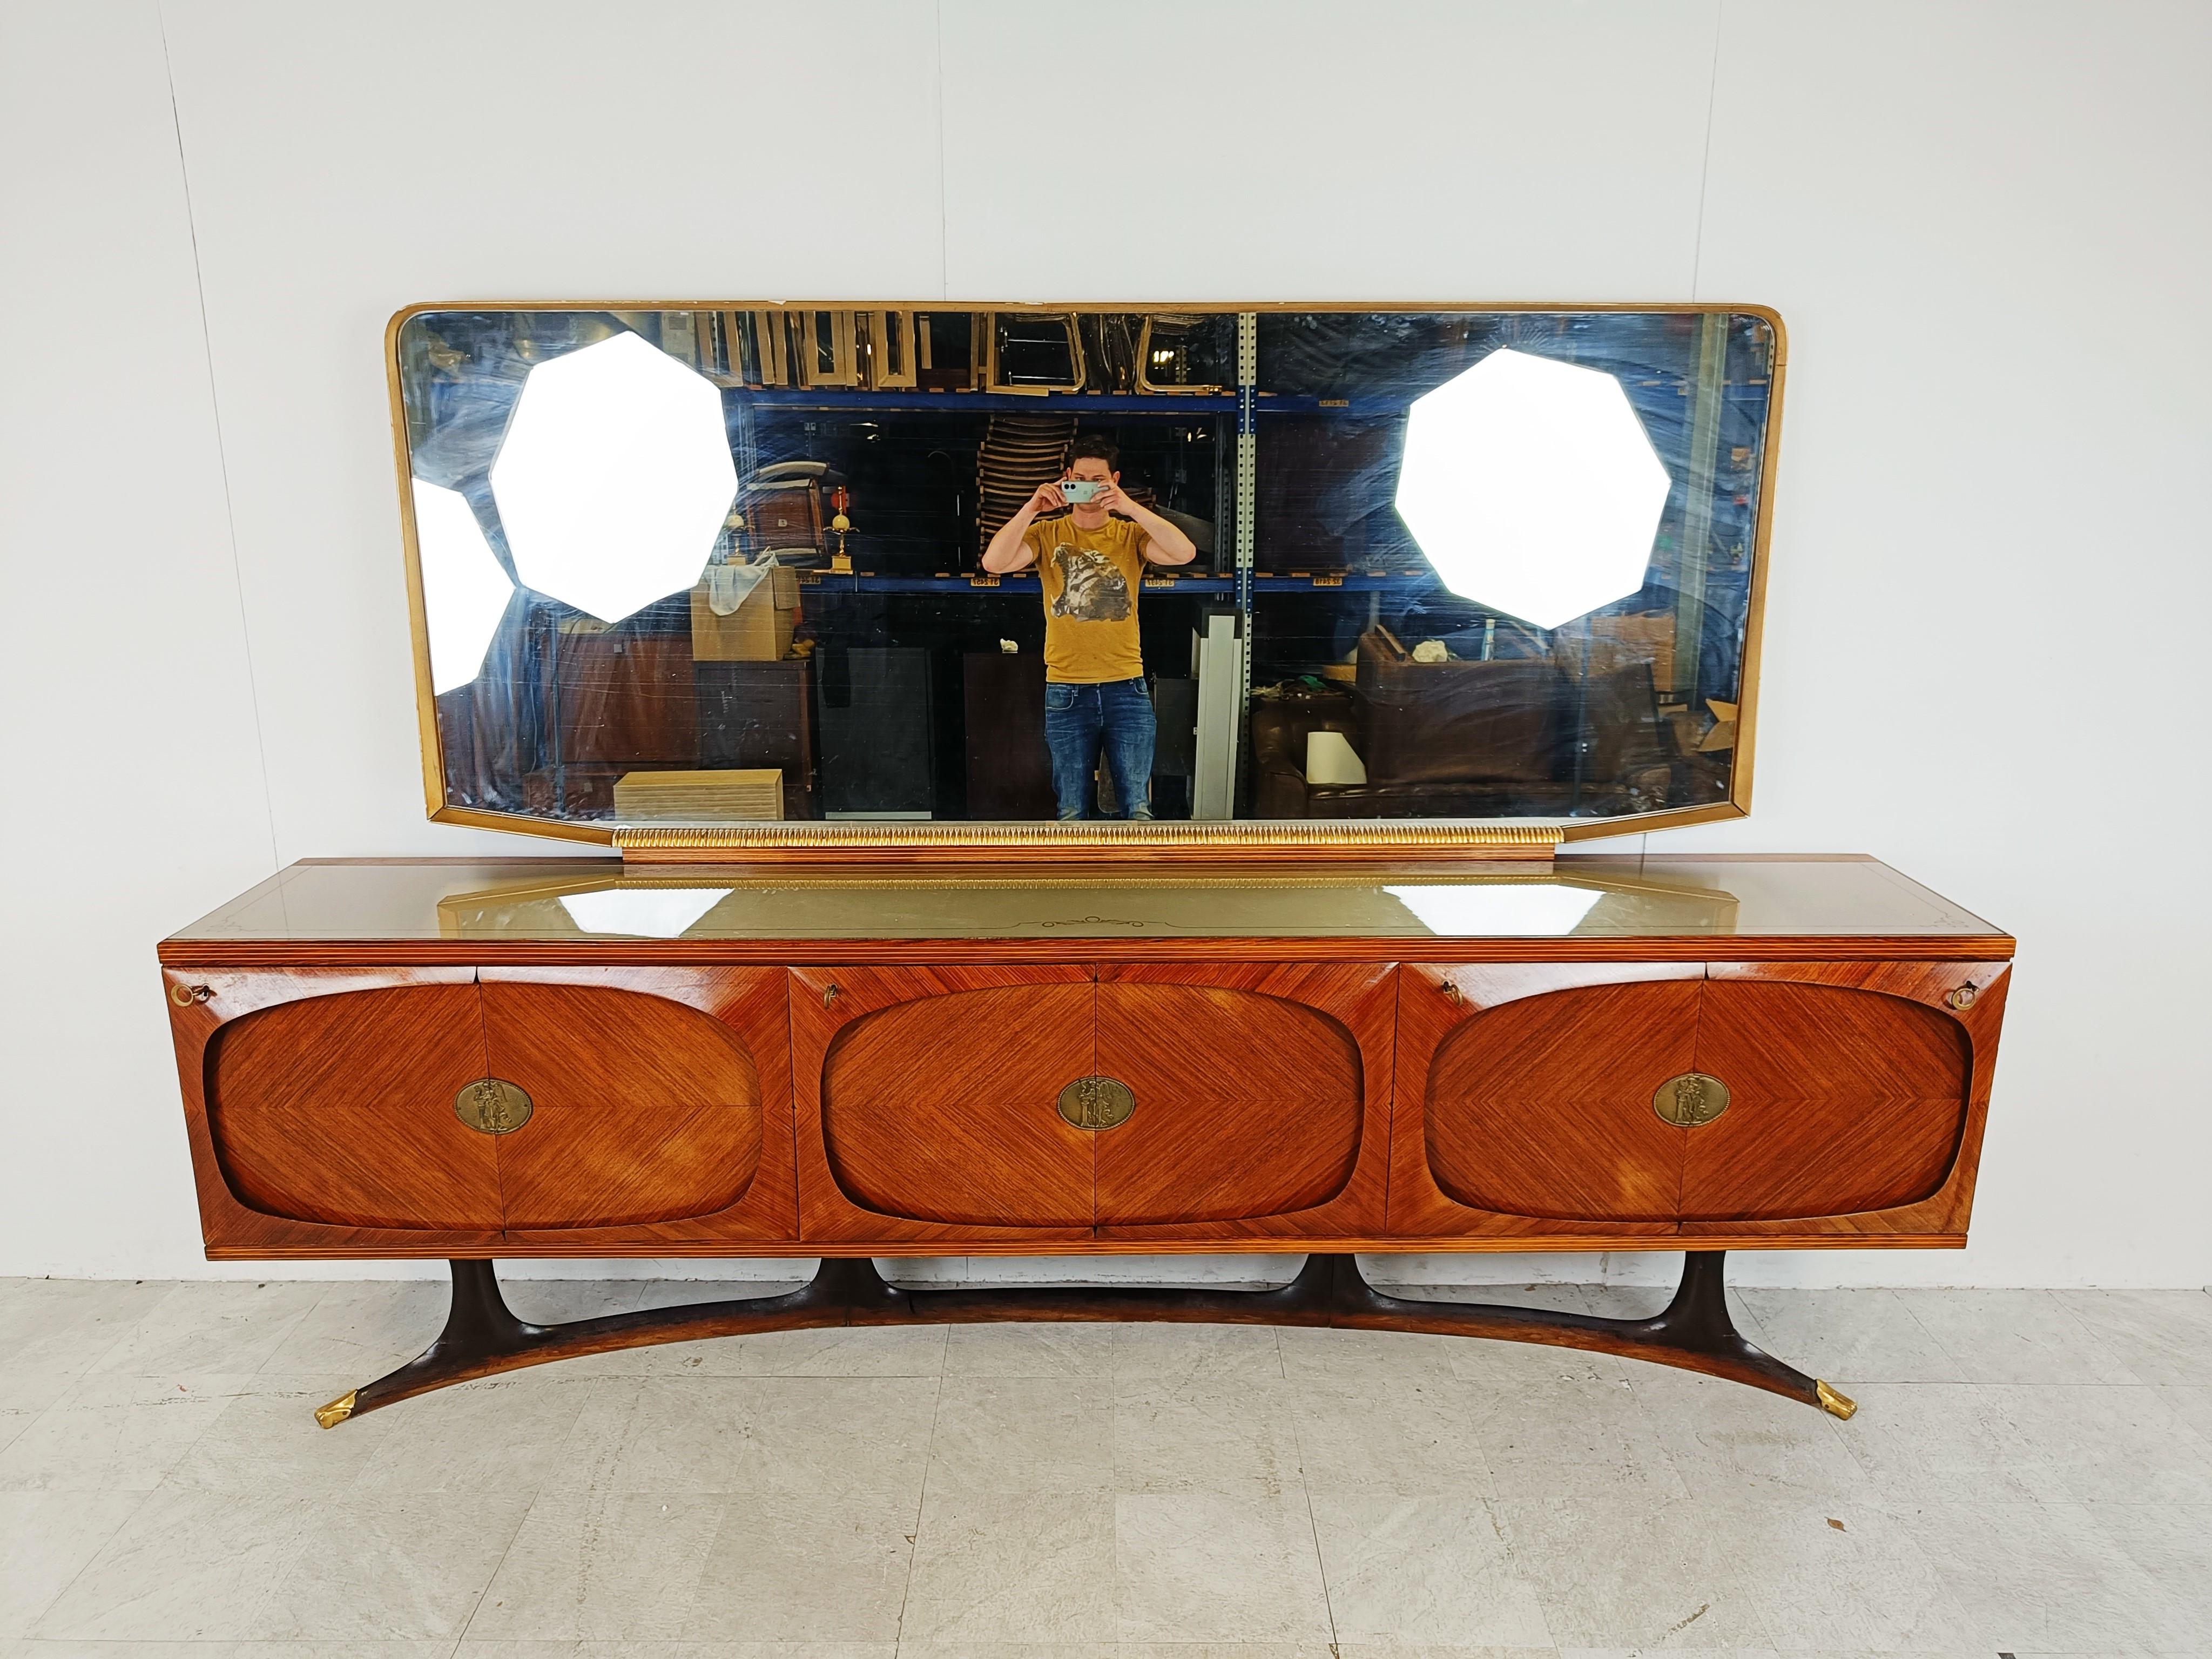 Sehr elegantes Sideboard mit Spiegel aus der Mitte des Jahrhunderts, entworfen von Vittorio Dassi für Lissone.

Diese Anrichte aus Palisanderholz besteht aus sechs Türen, die jeweils mit einem Medaillon aus Messing verziert sind. 

Die Türen sind